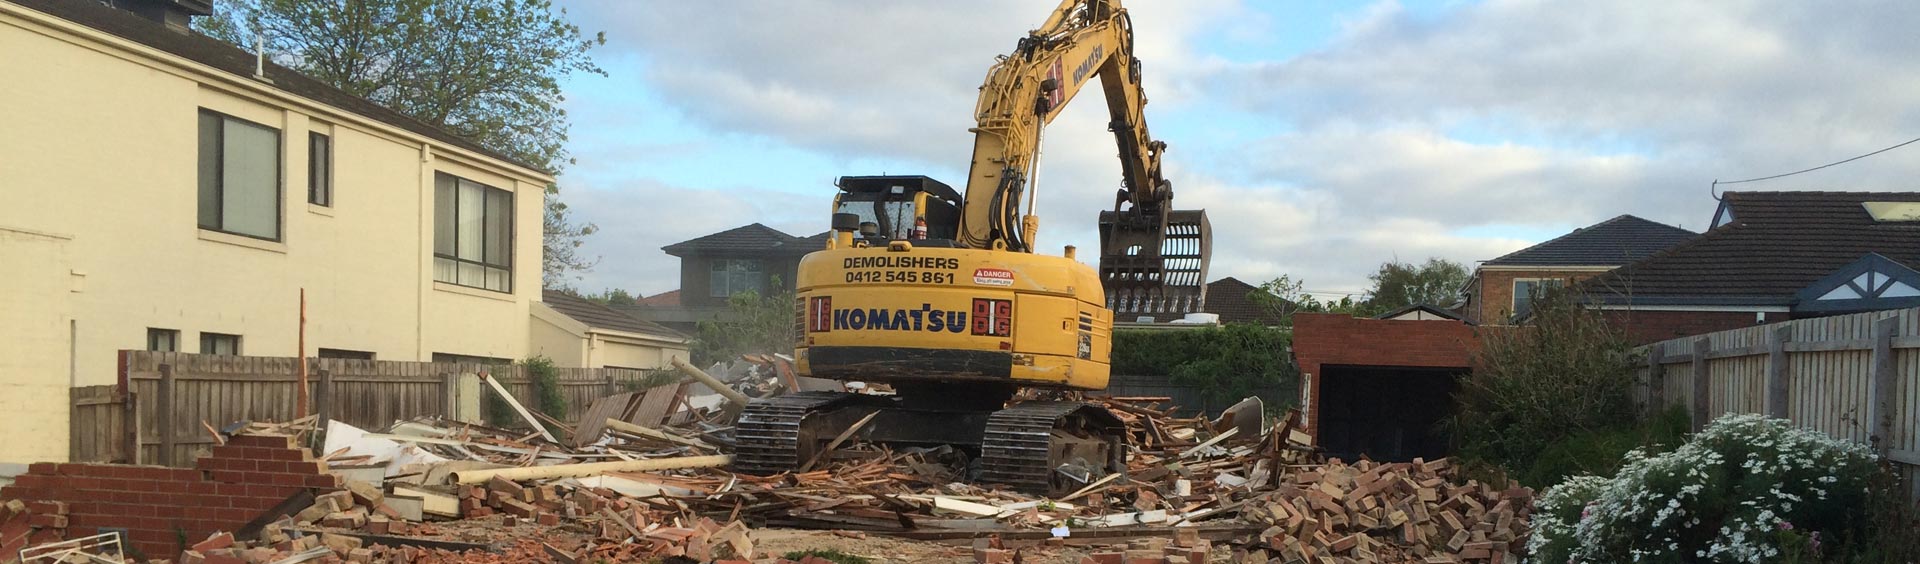 backhoe at house demolition site